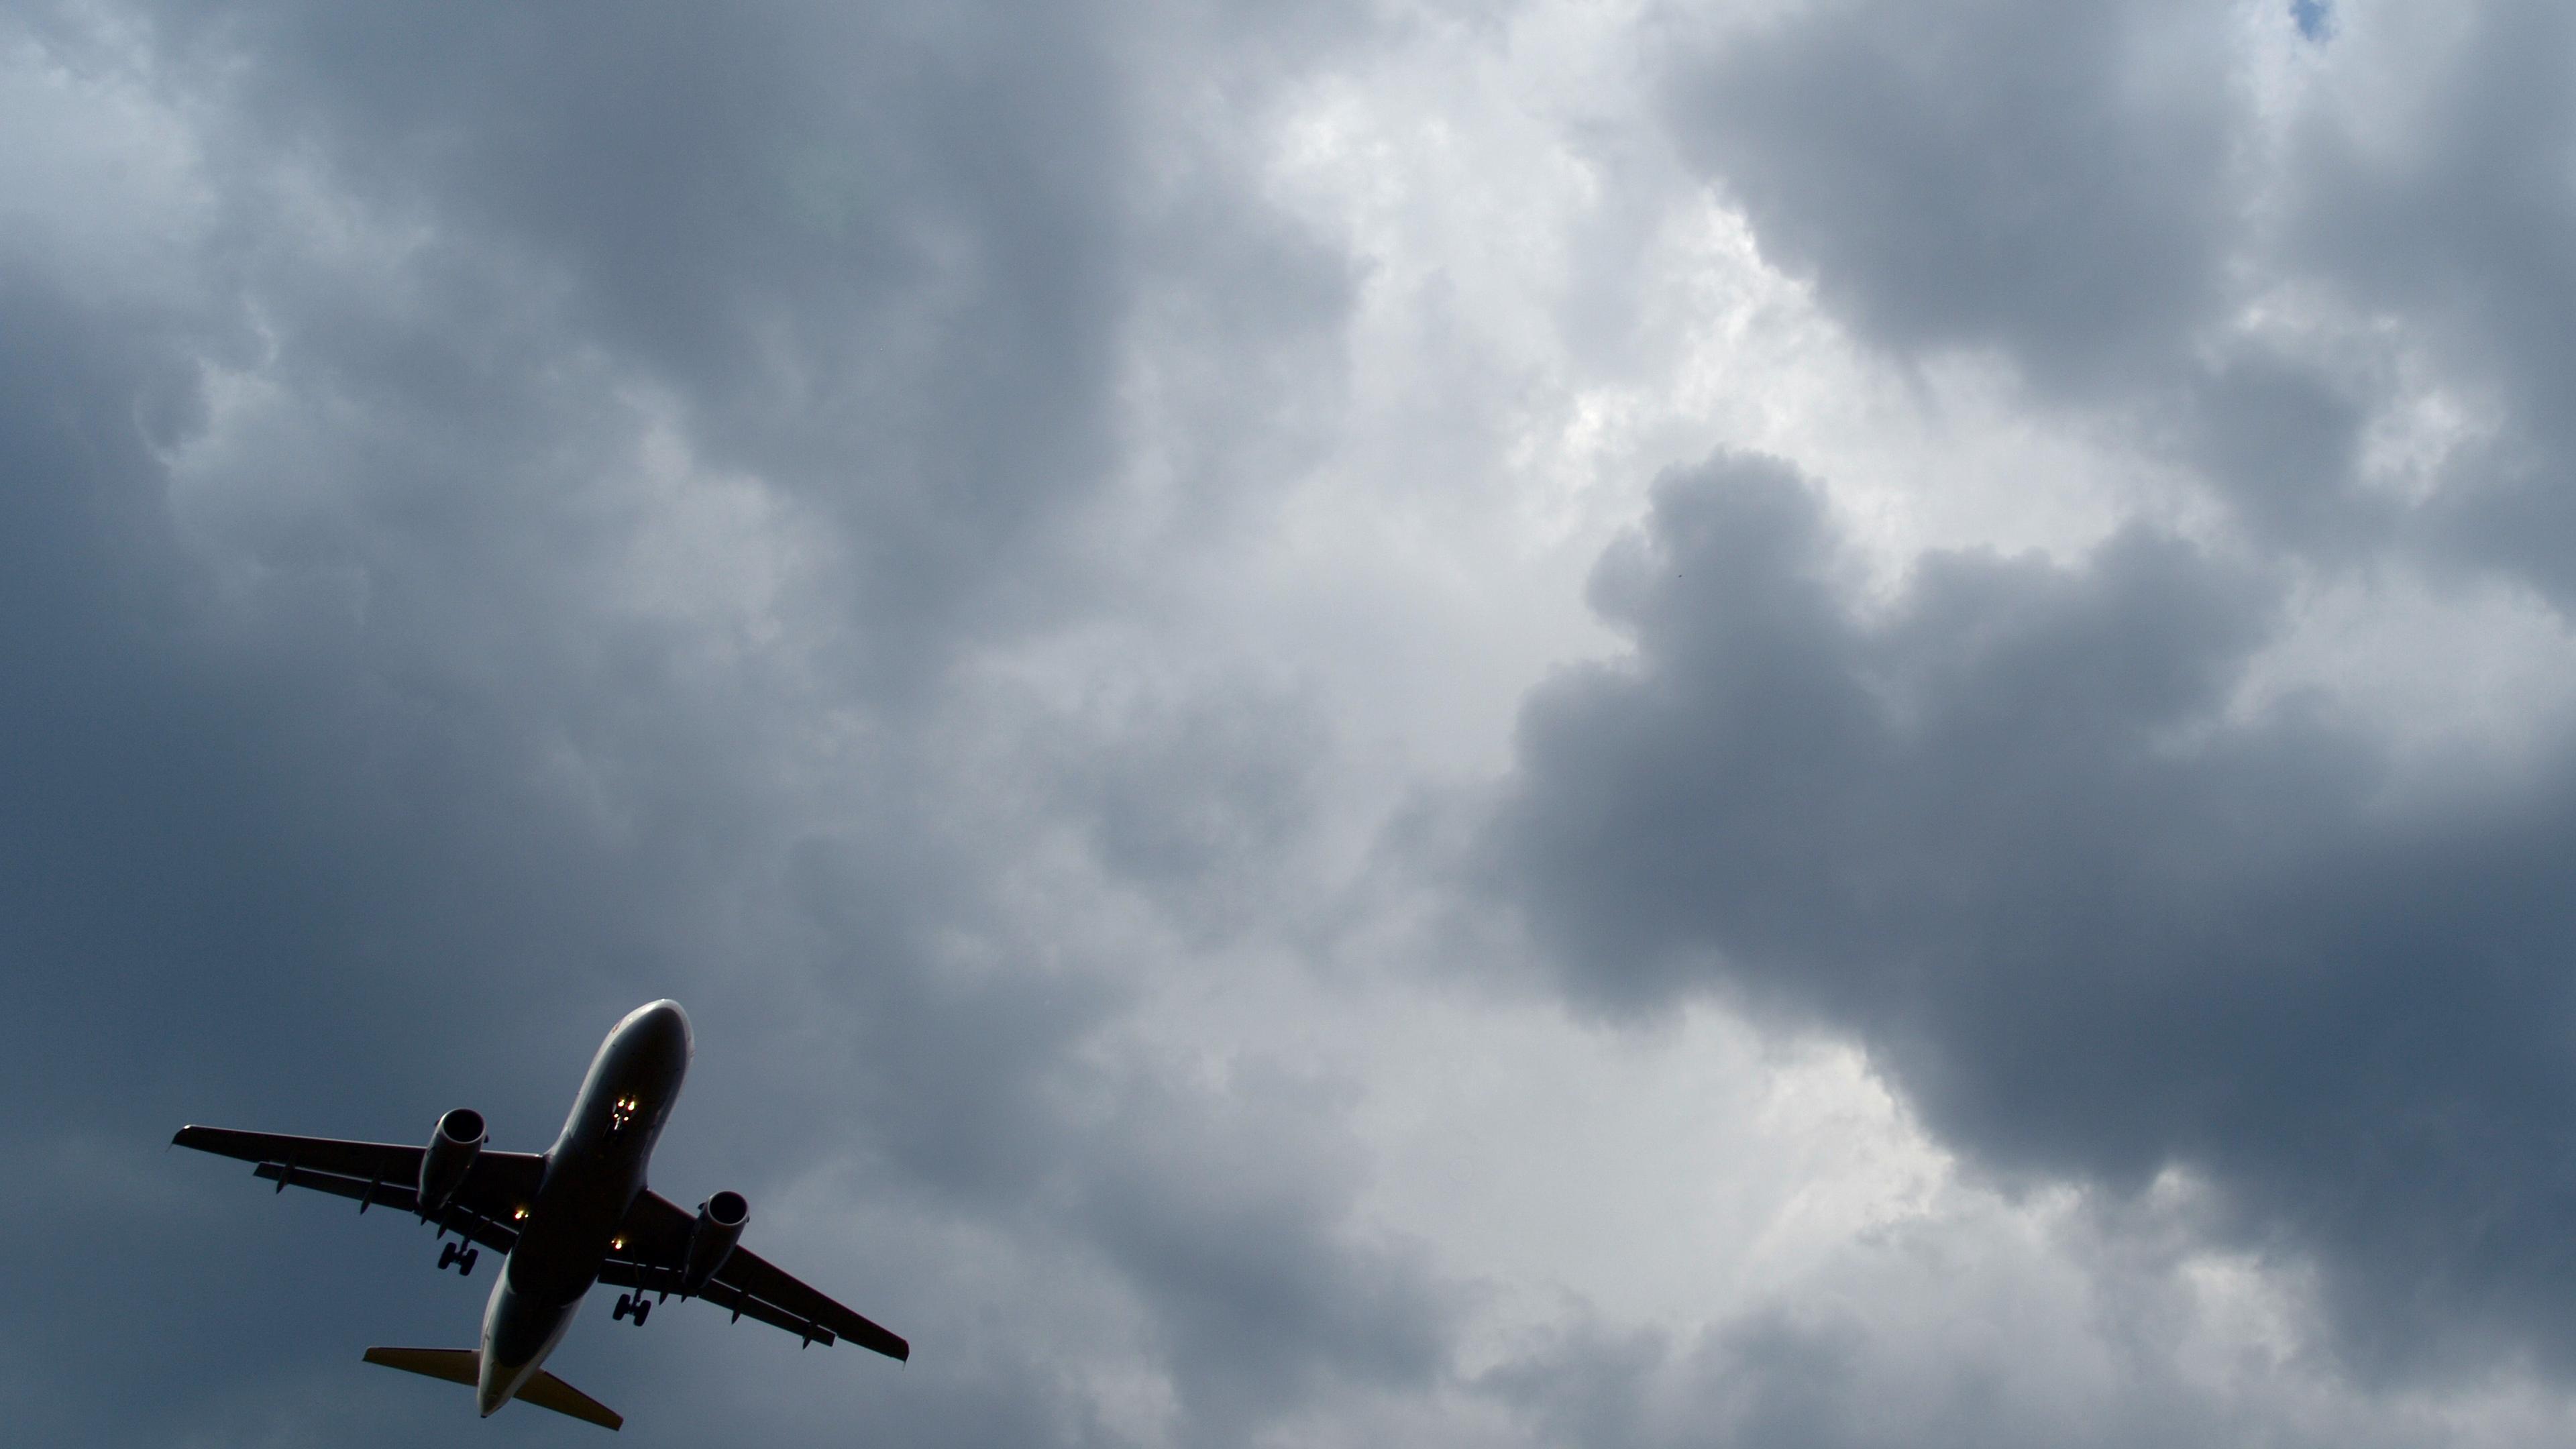 ARCHIV - 22.07.2013, Nordrhein-Westfalen, Köln: Das kann heikel werden: Gewitterwolken türmen sich über einem Flugzeug auf. (zu dpa: «Flug mit Turbulenzen - zwölf Verletzte») Foto: Federico Gambarini/dpa +++ dpa-Bildfunk +++